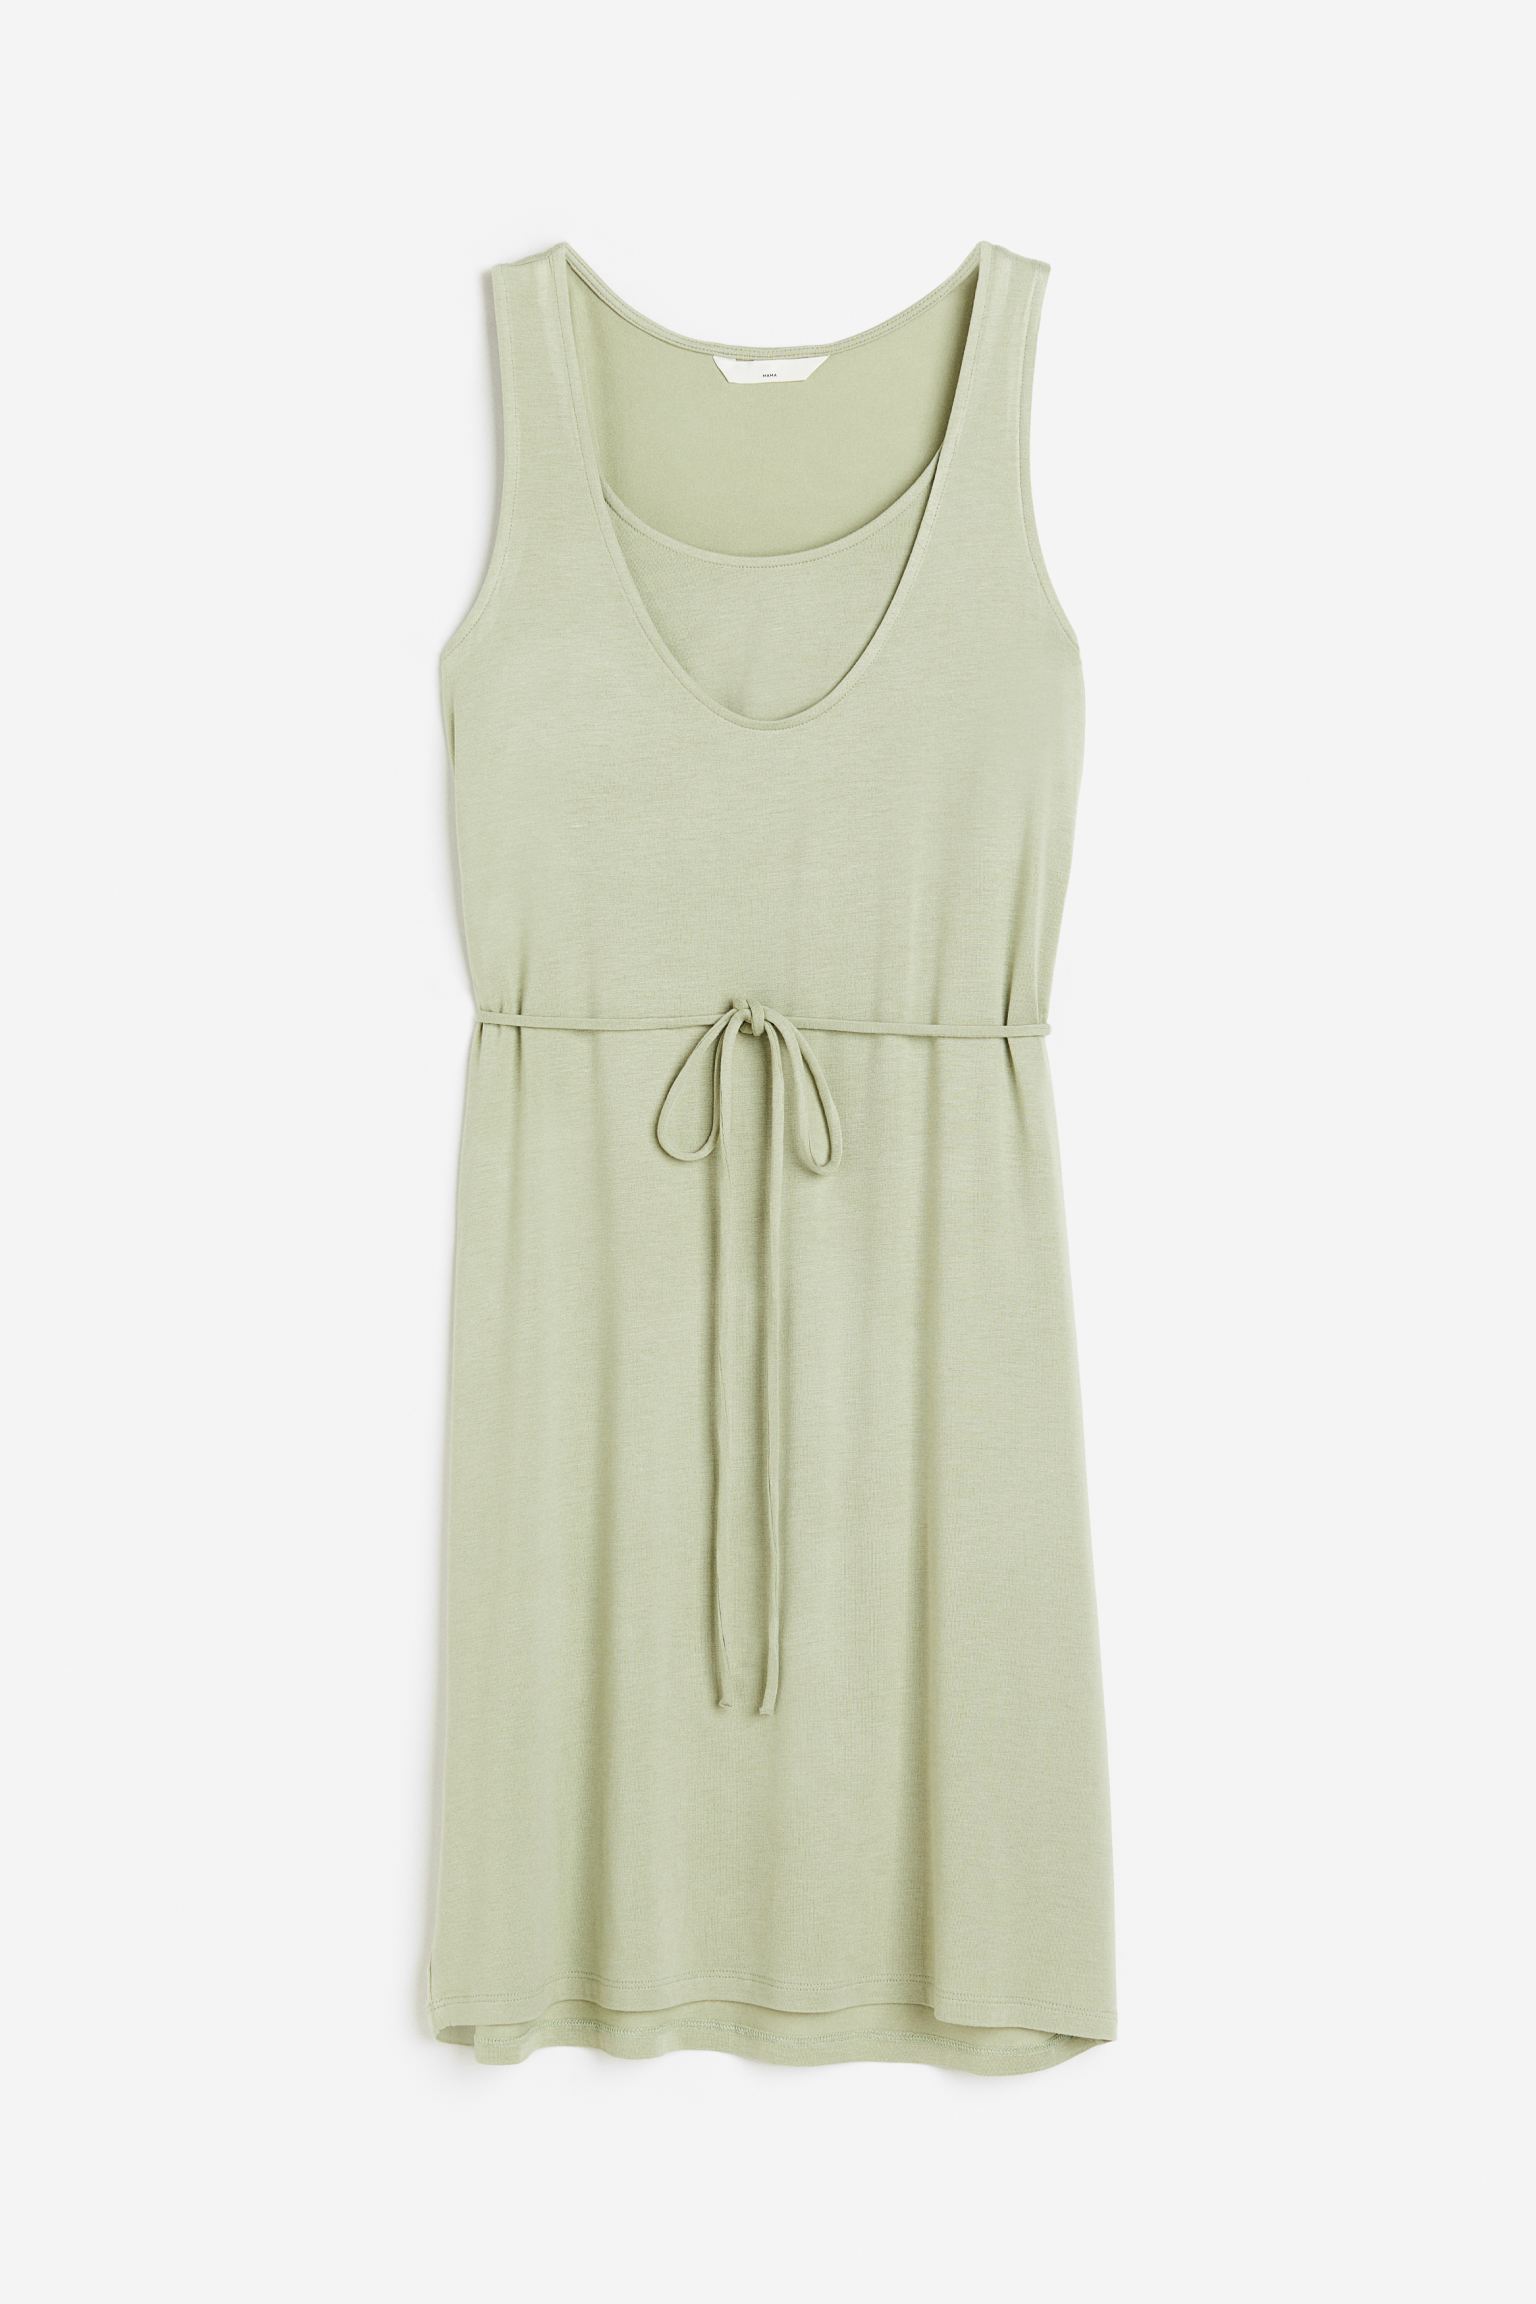 Платье женское H&M 1116459001 зеленое XL (доставка из-за рубежа)